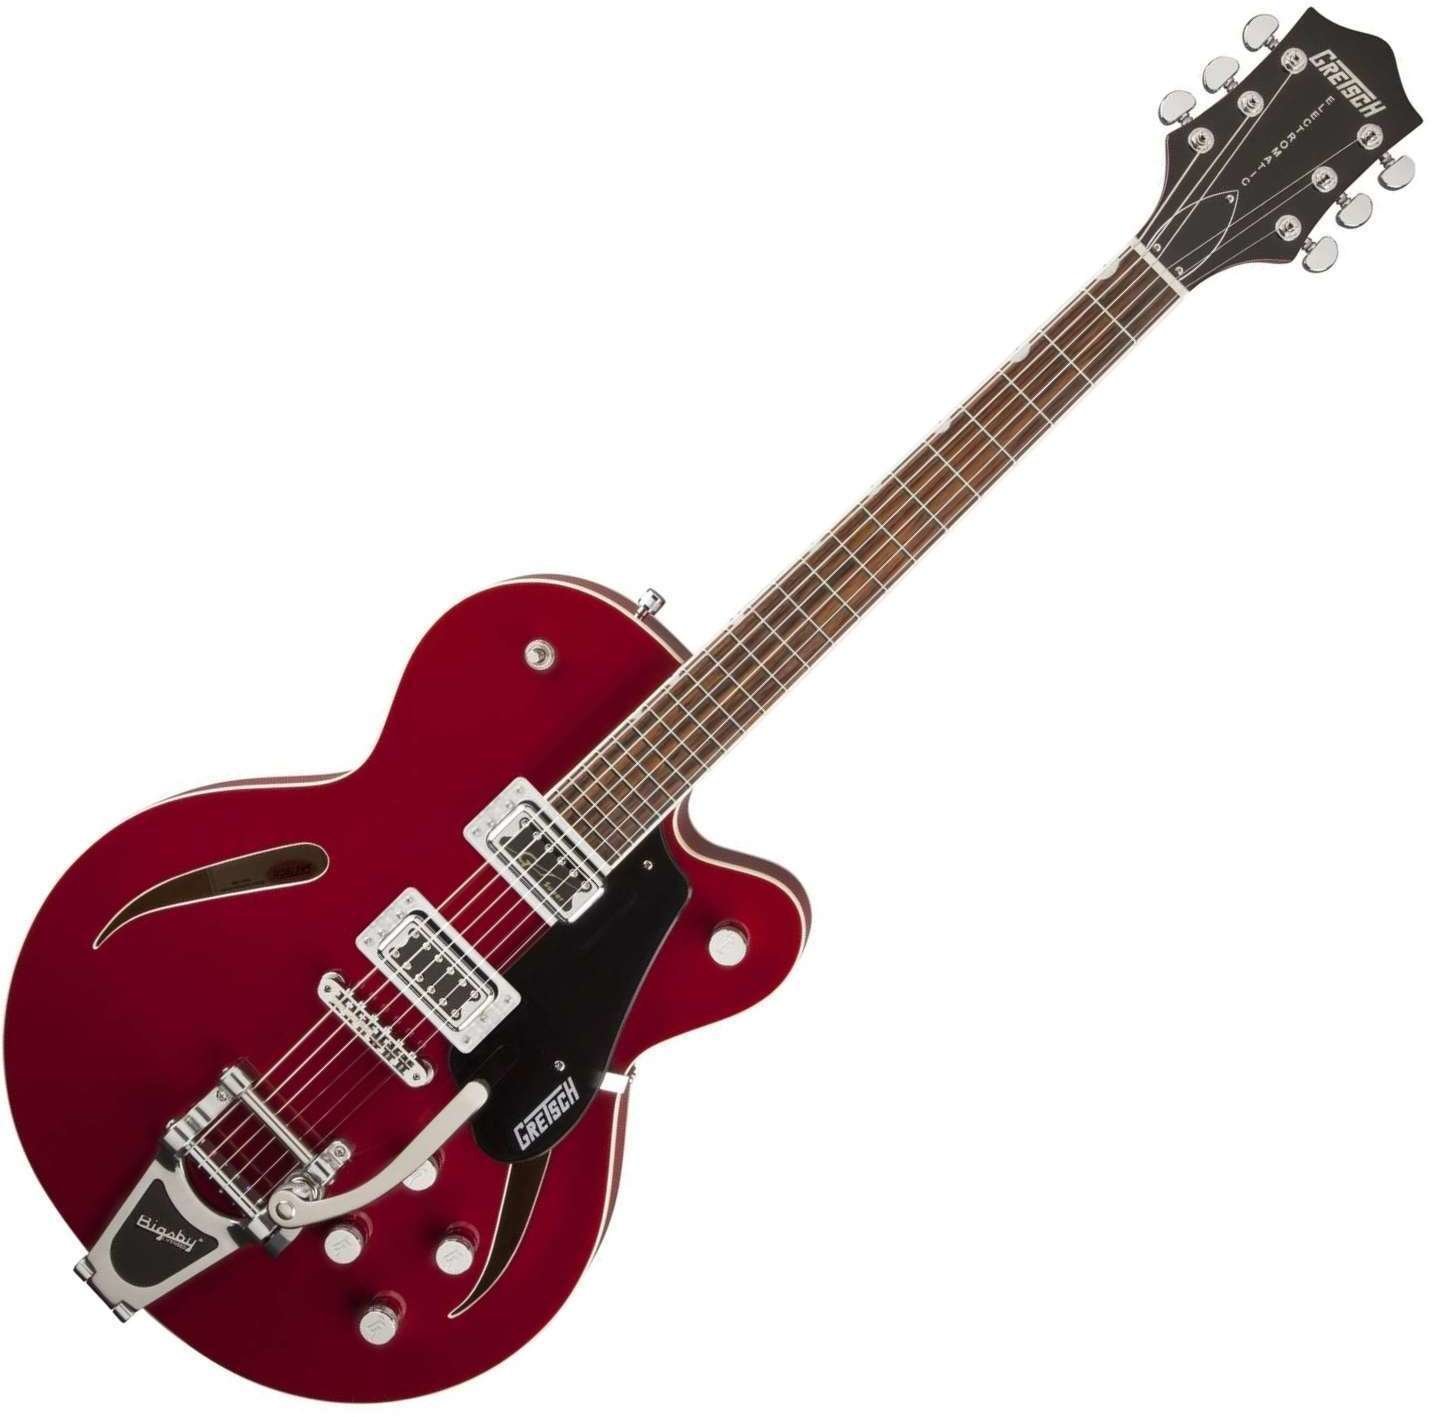 Джаз китара Gretsch G5620T-CB Rosa Red